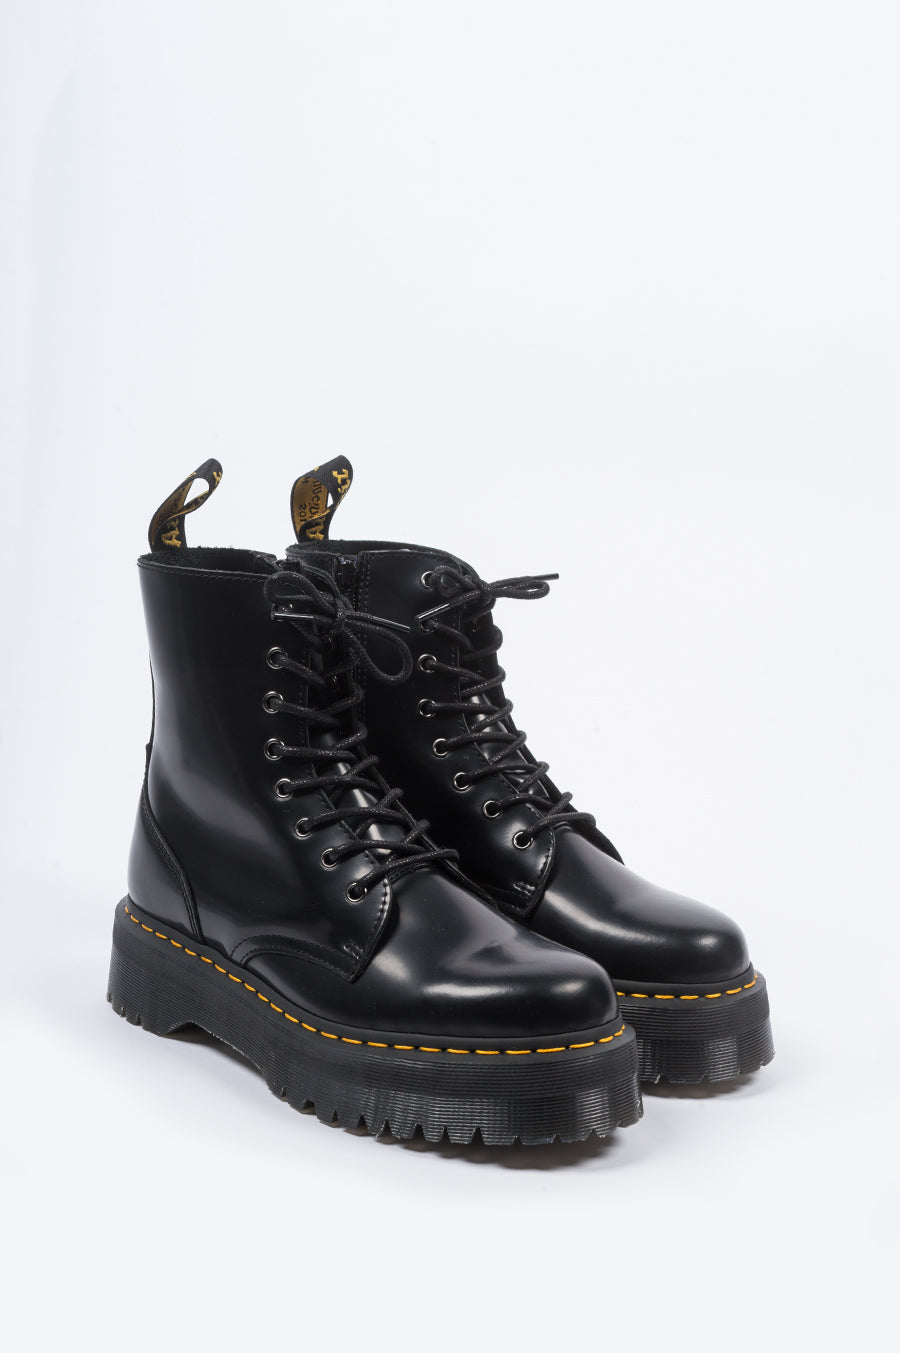 DR MARTENS BOOTS * UK 7 *Jadon Platform Smooth Leather * Black * RRP £199  £149.99 - PicClick UK